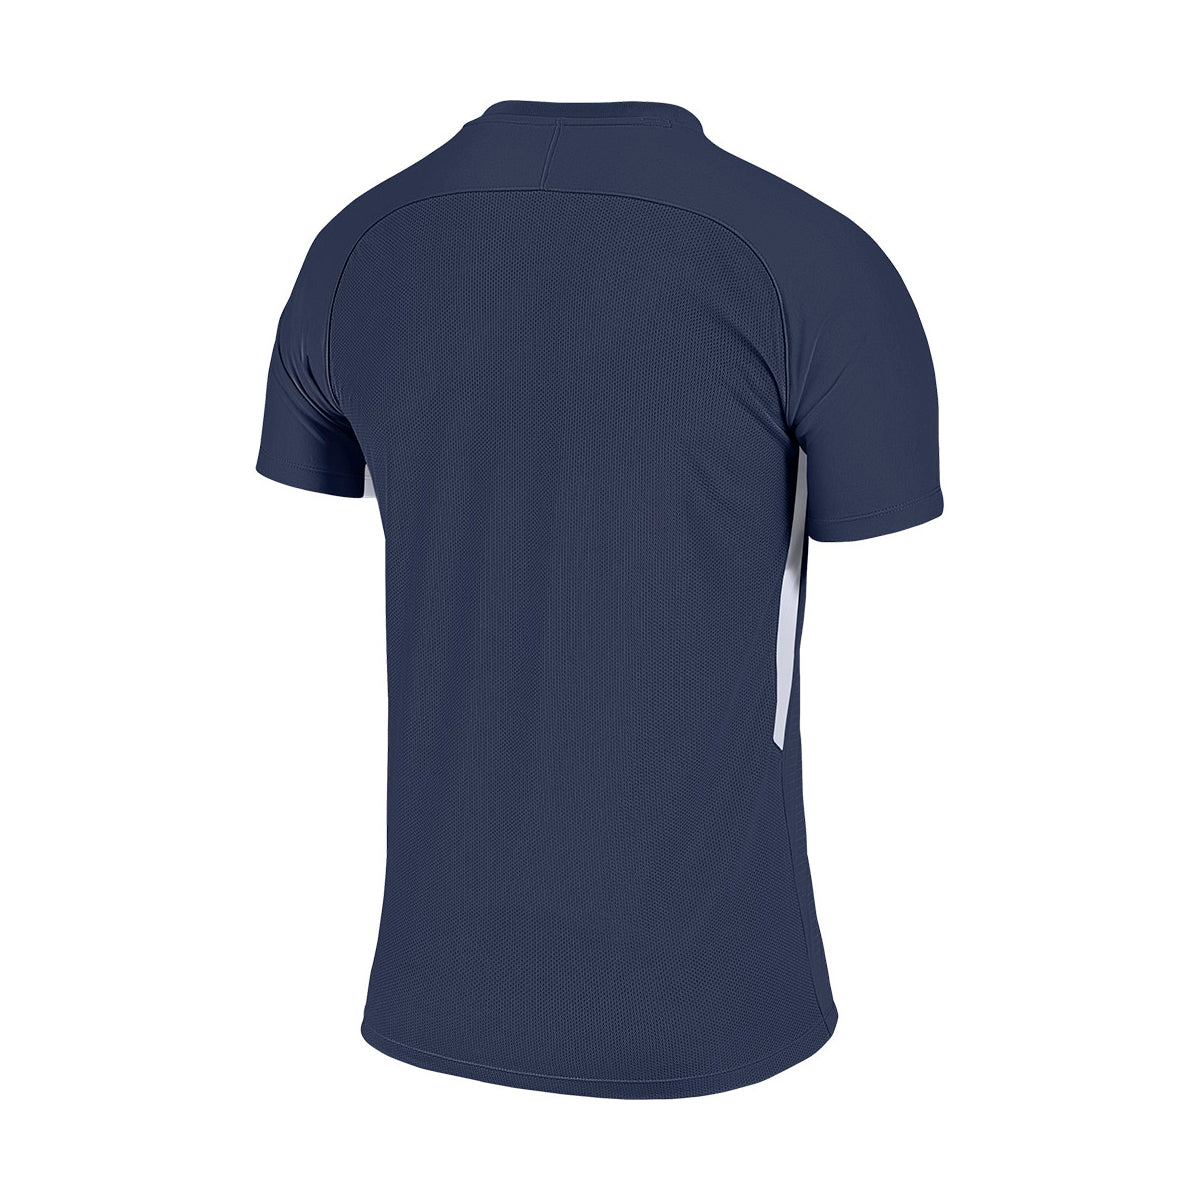 Shirt Nike Retro Blau